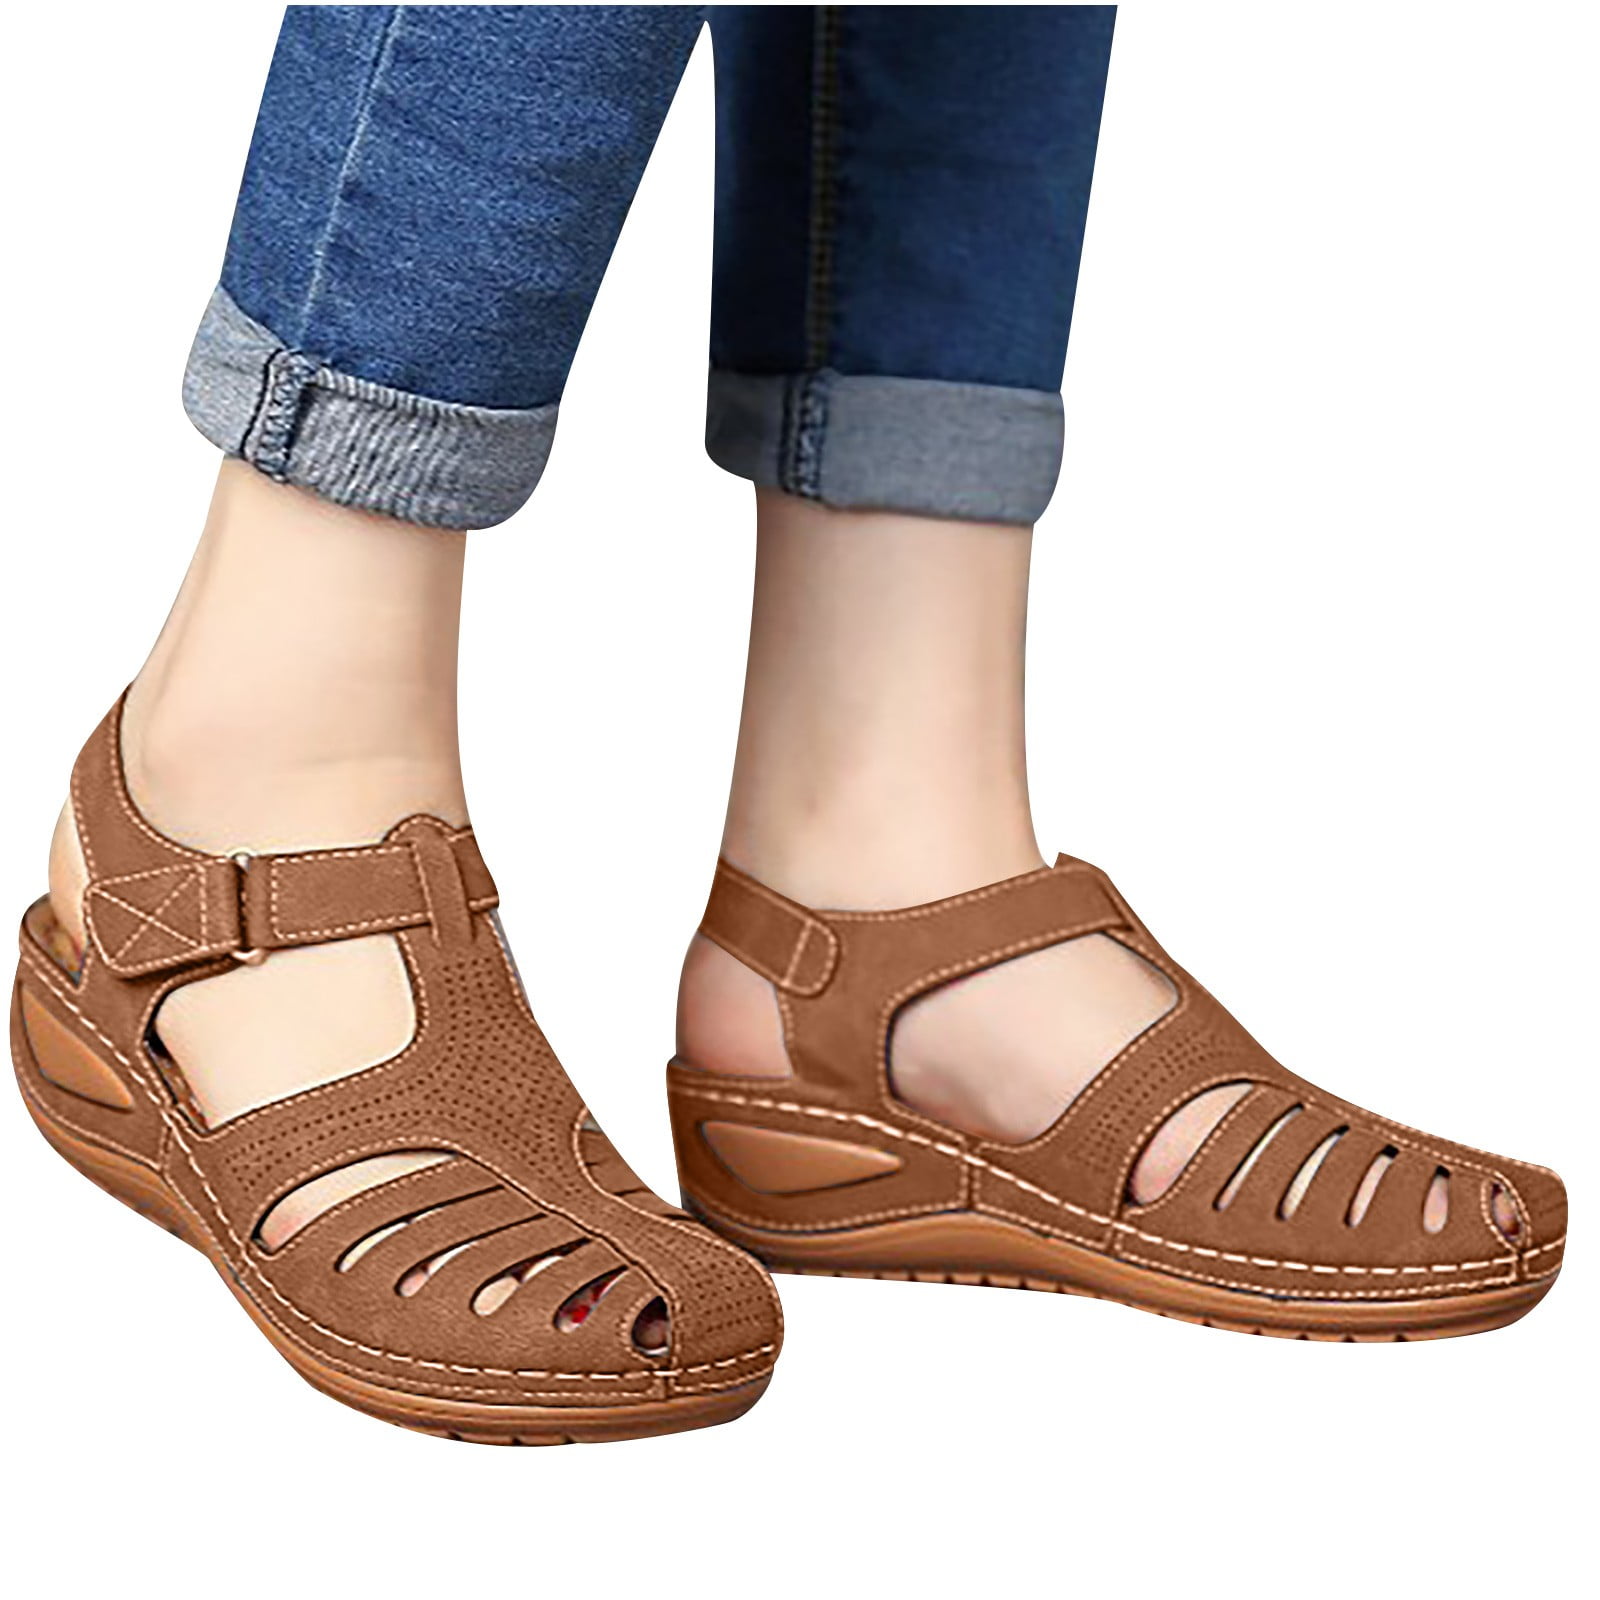 FOOT SOFA】11cm flip flop wedges heels summer sandals slippers woman shoes  women girls beach shoe light bottom platform